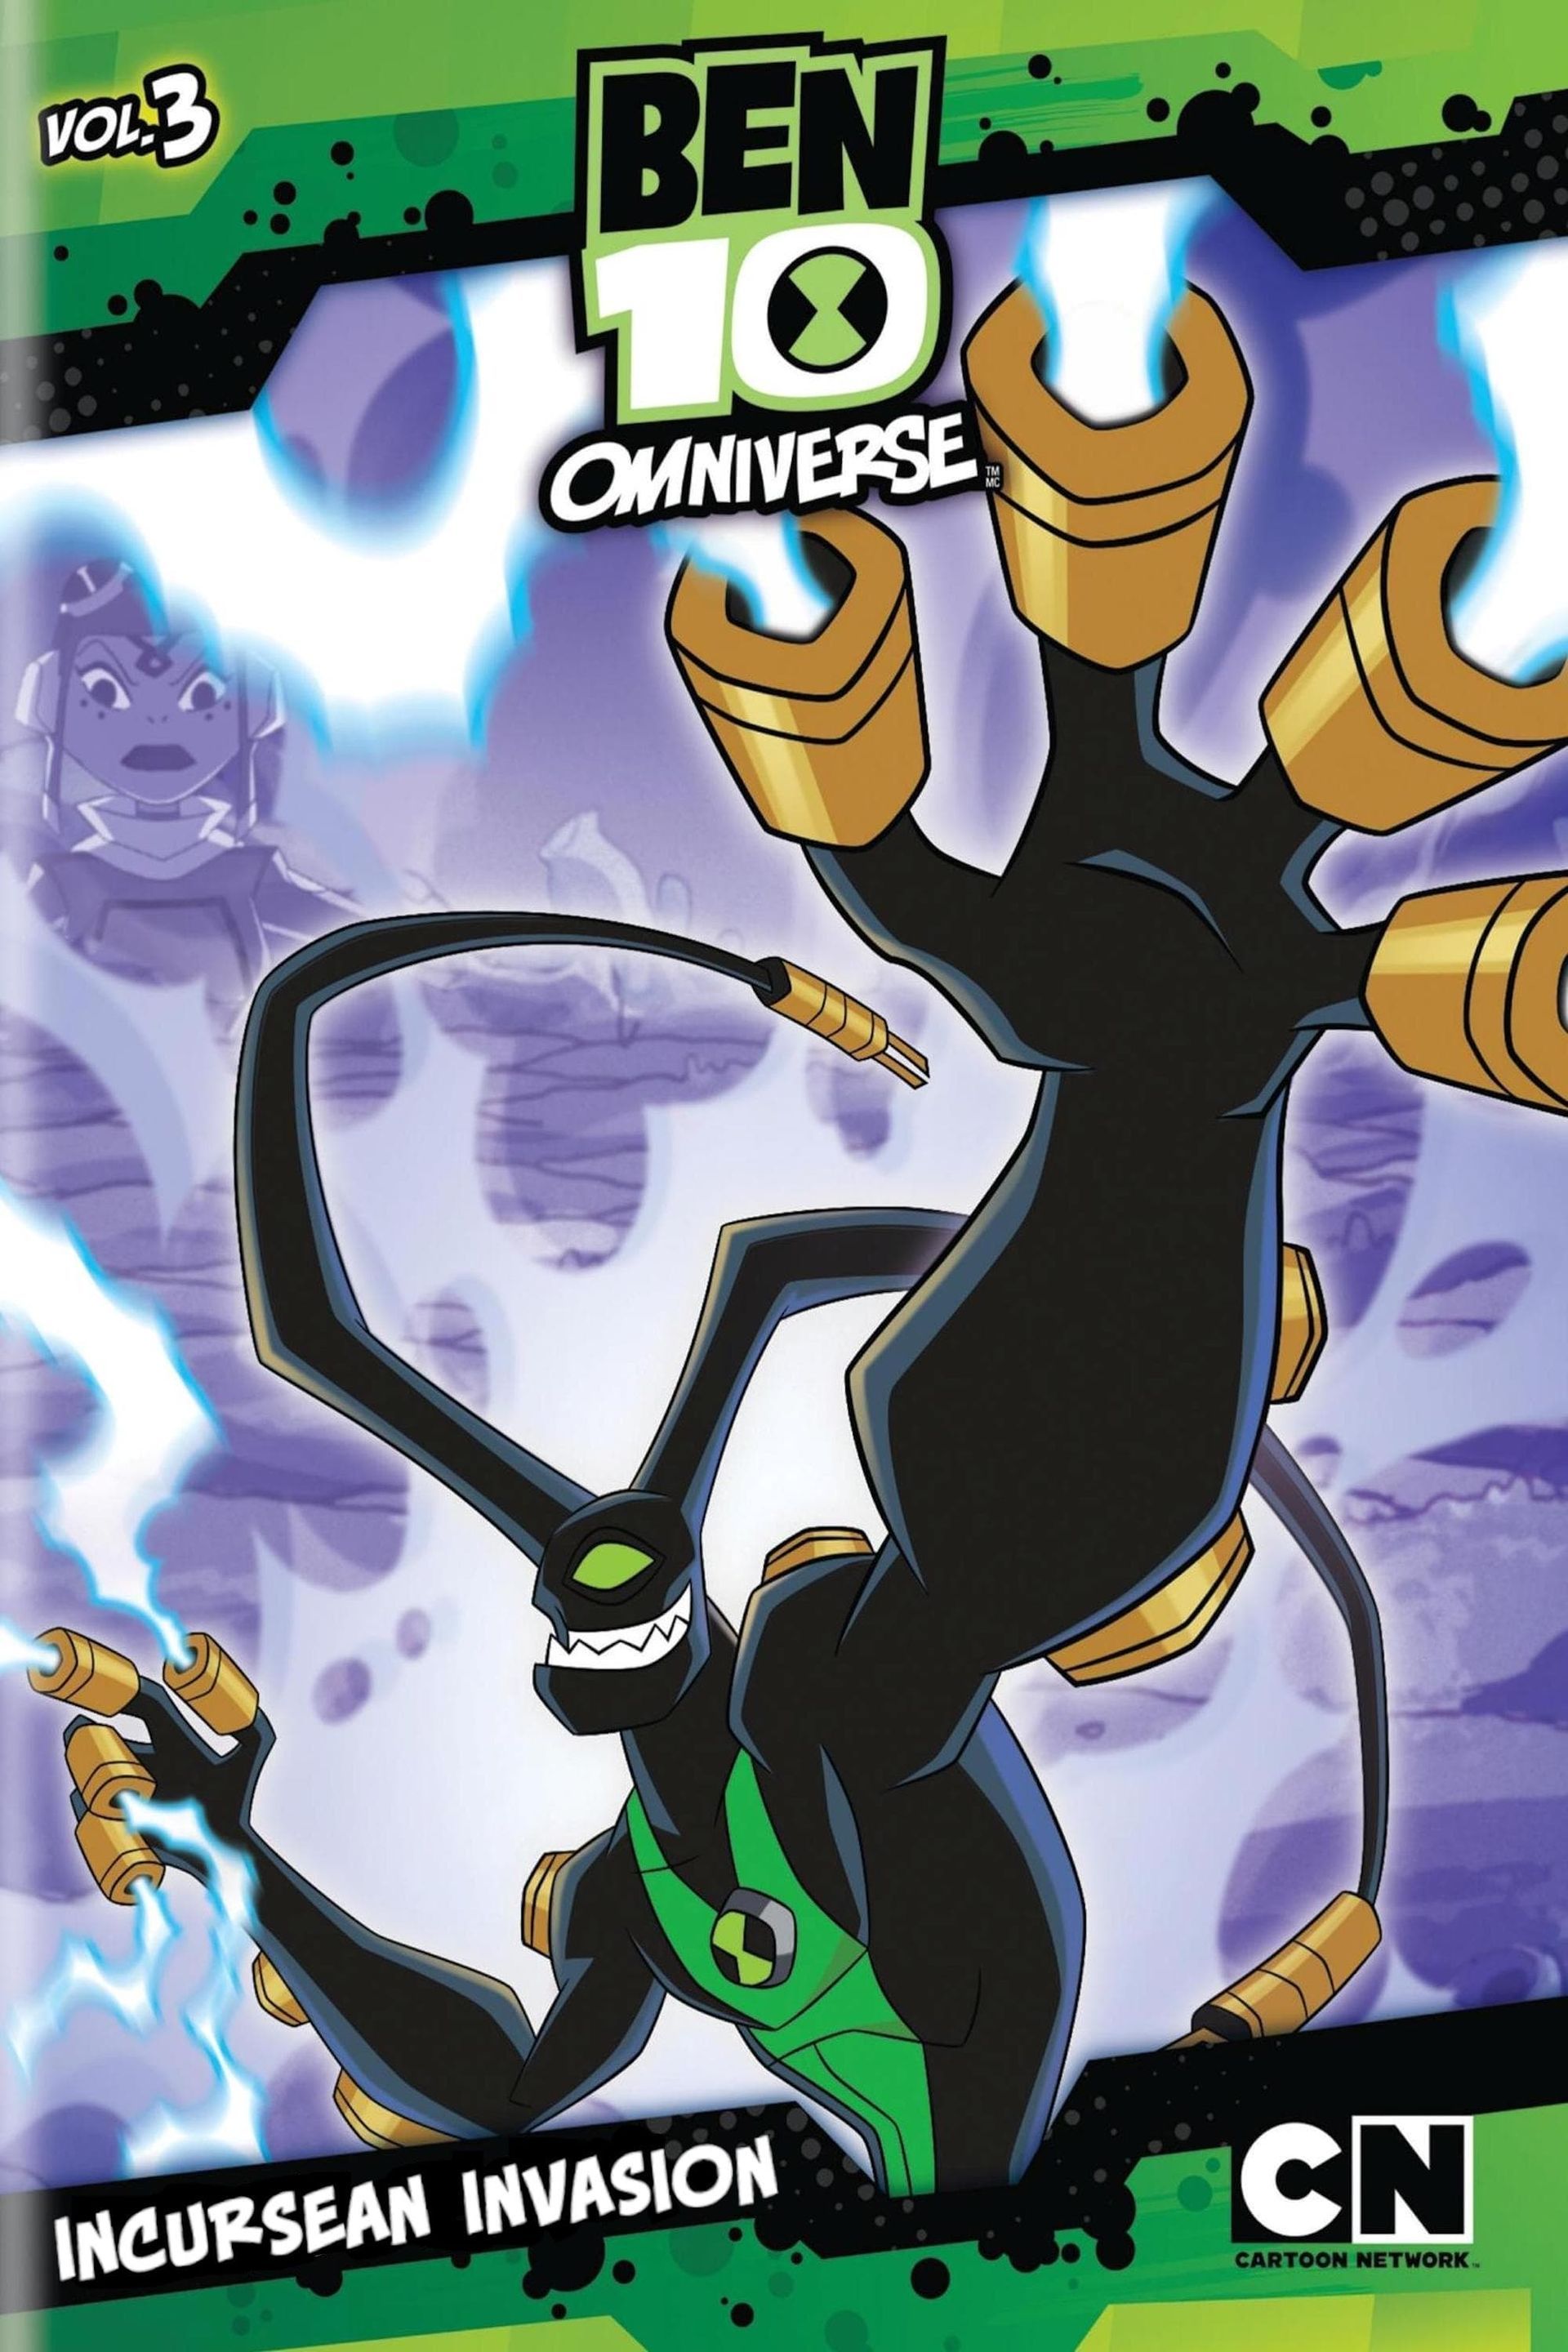  Cartoon Network: Classic Ben 10 Alien Force: Volume